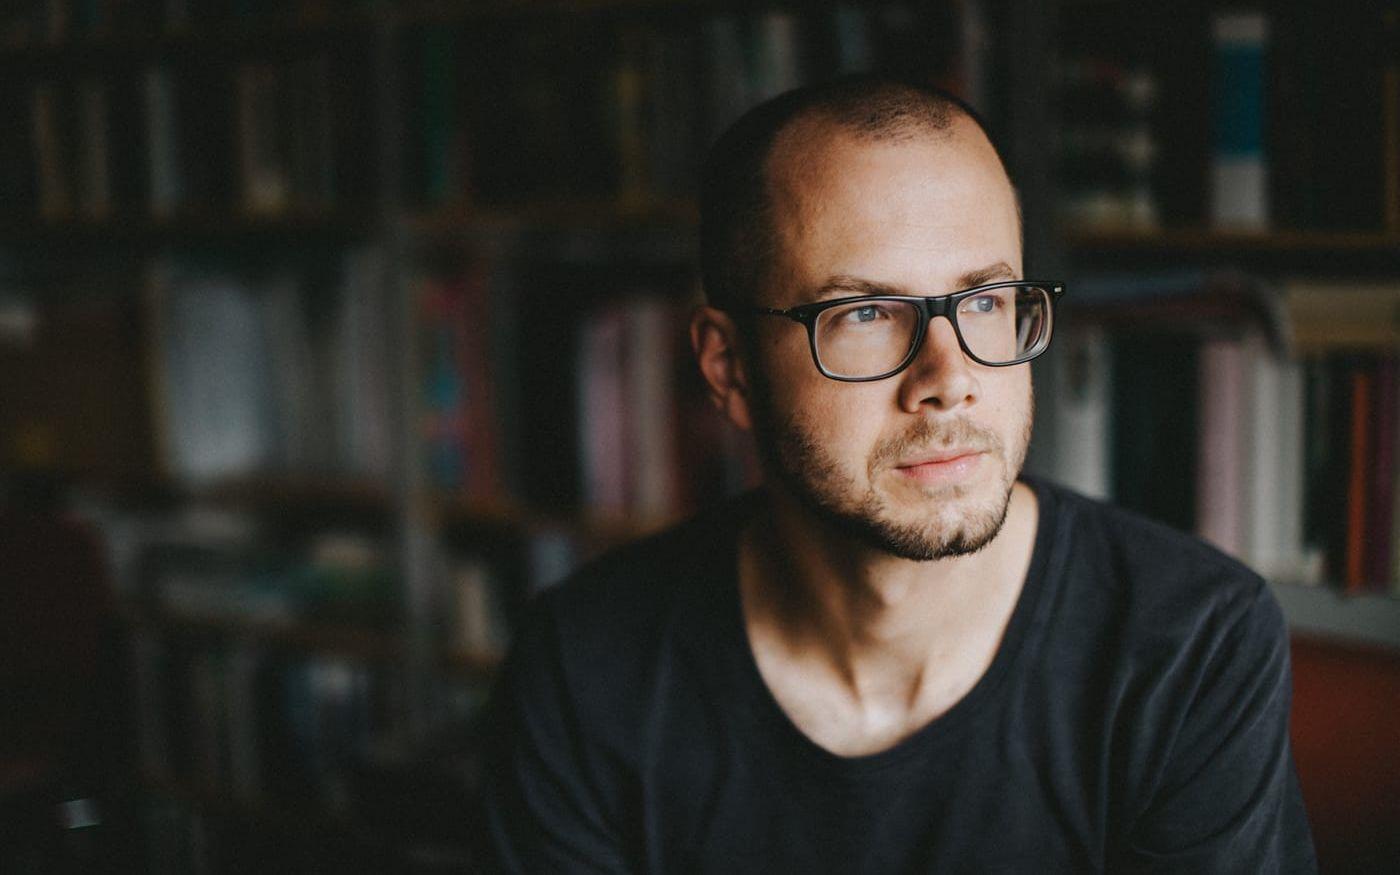 Kalle Hedström Gustafsson är poet, utbildad vid Litterär gestaltning på Valand. Hans debut ”Mormorordning, hägringsöar” kom 2019.